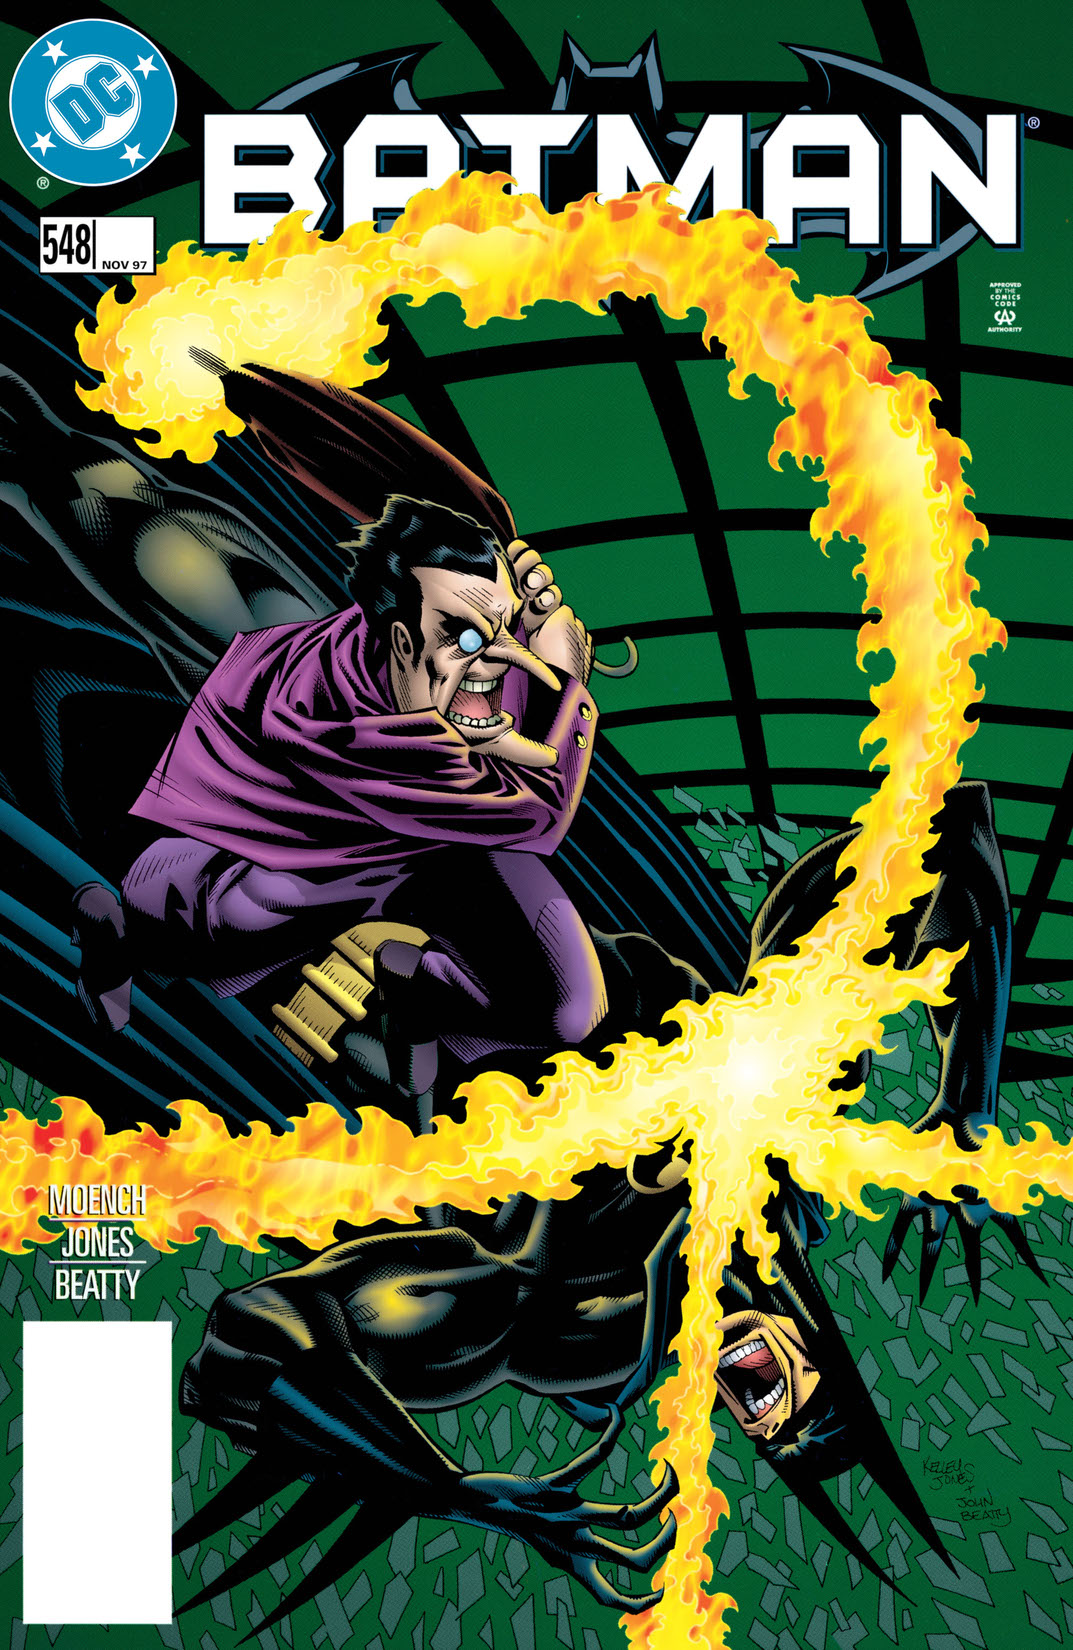 Batman (1940-) #548 preview images